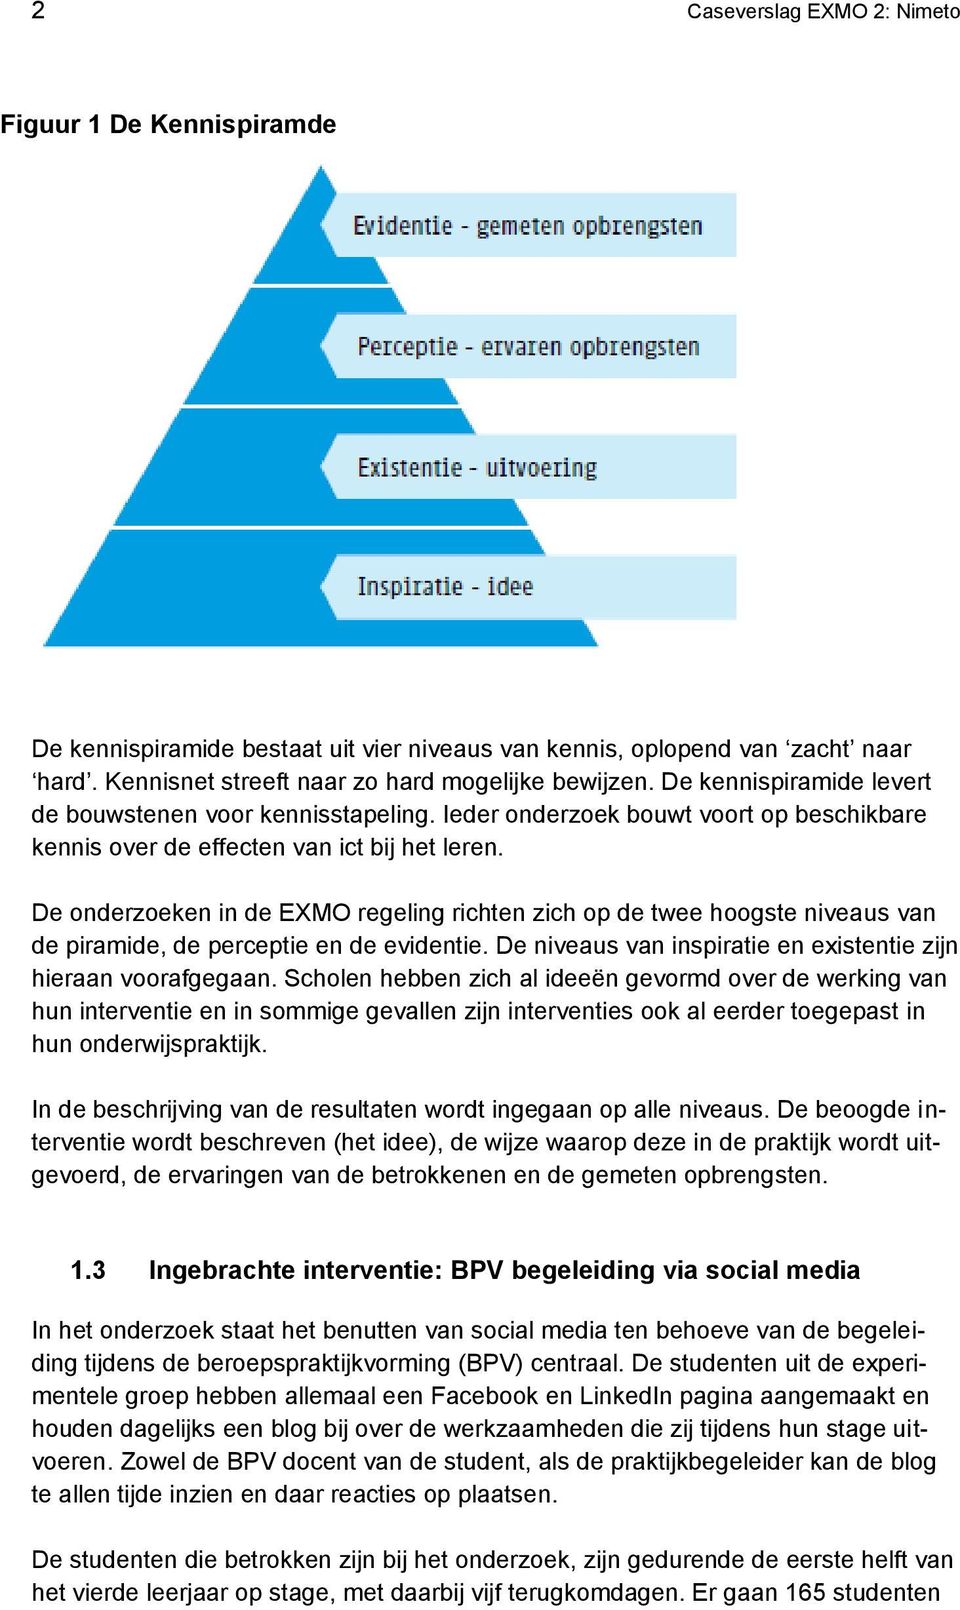 De onderzoeken in de EXMO regeling richten zich op de twee hoogste niveaus van de piramide, de perceptie en de evidentie. De niveaus van inspiratie en existentie zijn hieraan voorafgegaan.